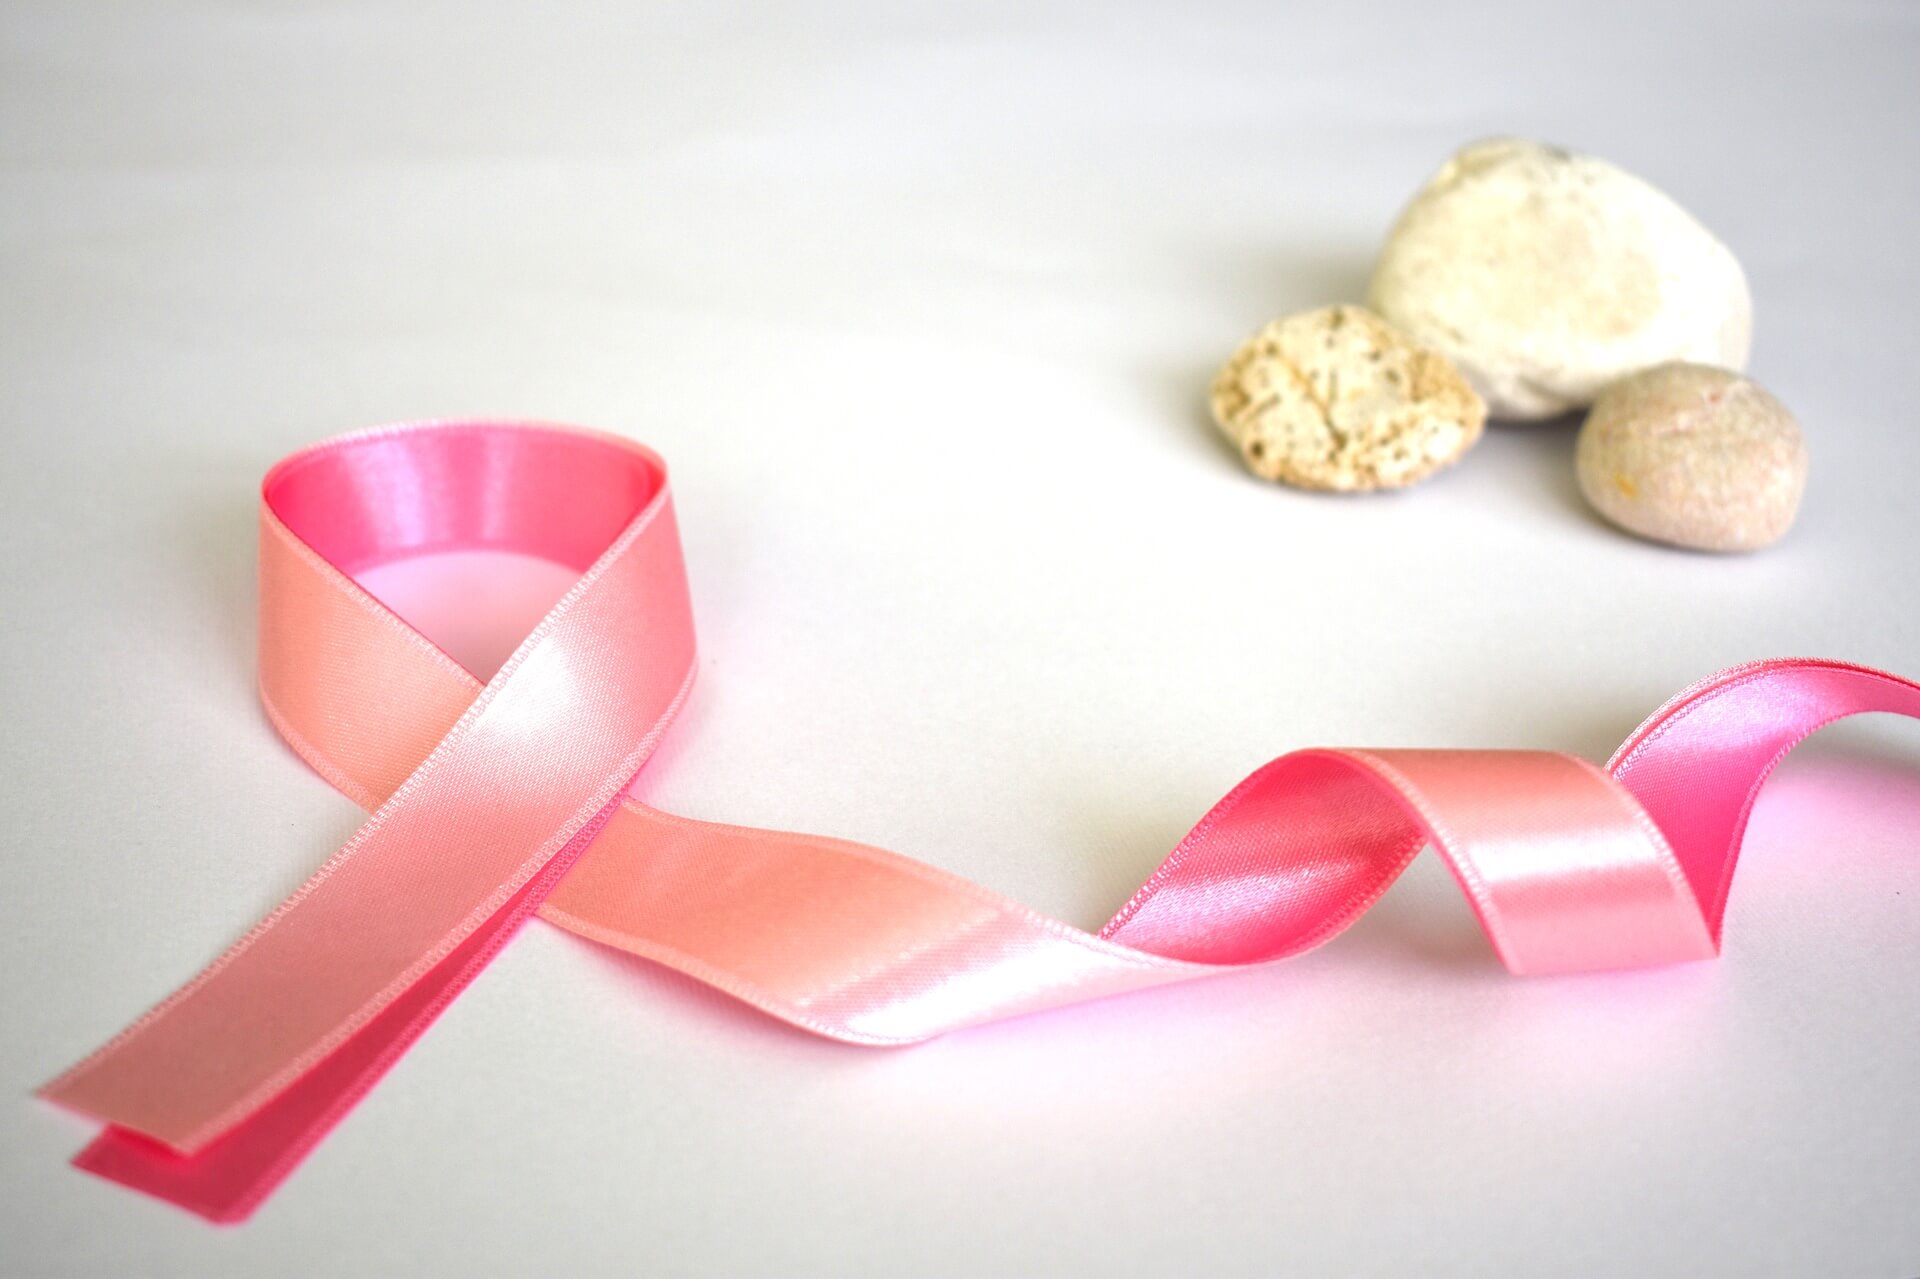 Qualität bei der Behandlung von Brustkrebs (marijana1, Pixabay)